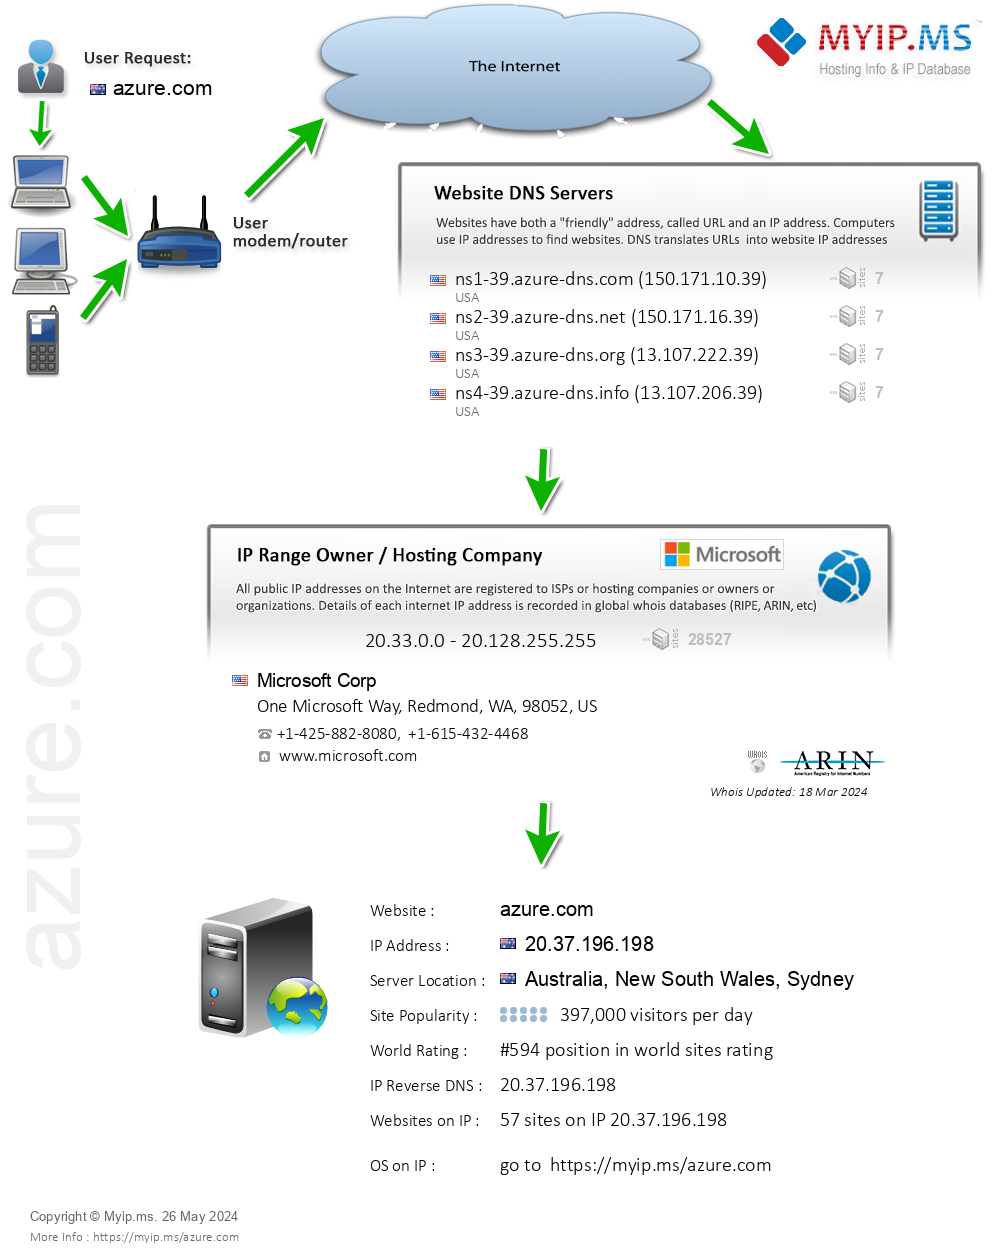 Azure.com - Website Hosting Visual IP Diagram